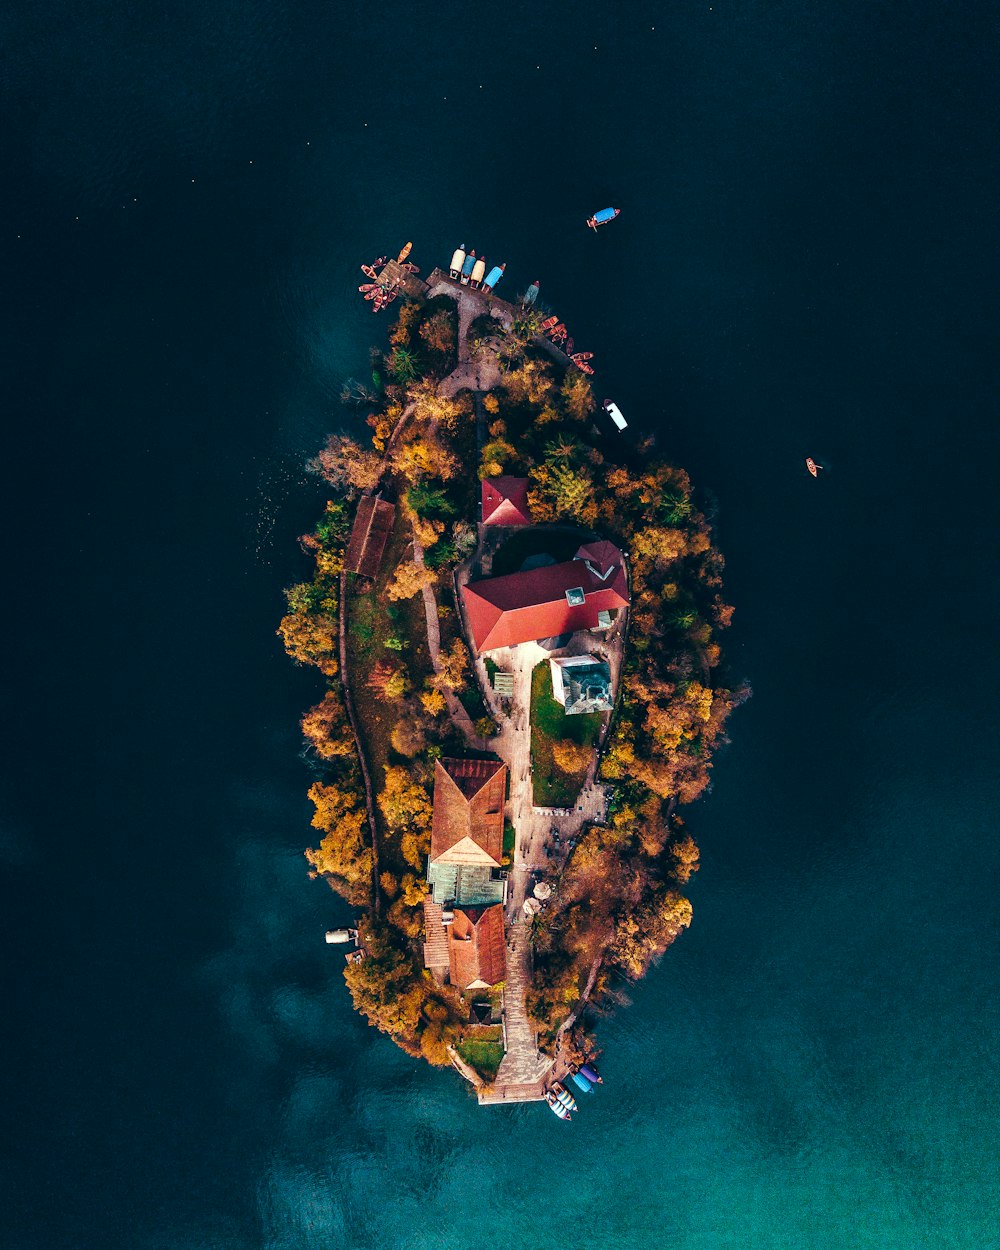 Photographie aérienne de l’île pendant la journée